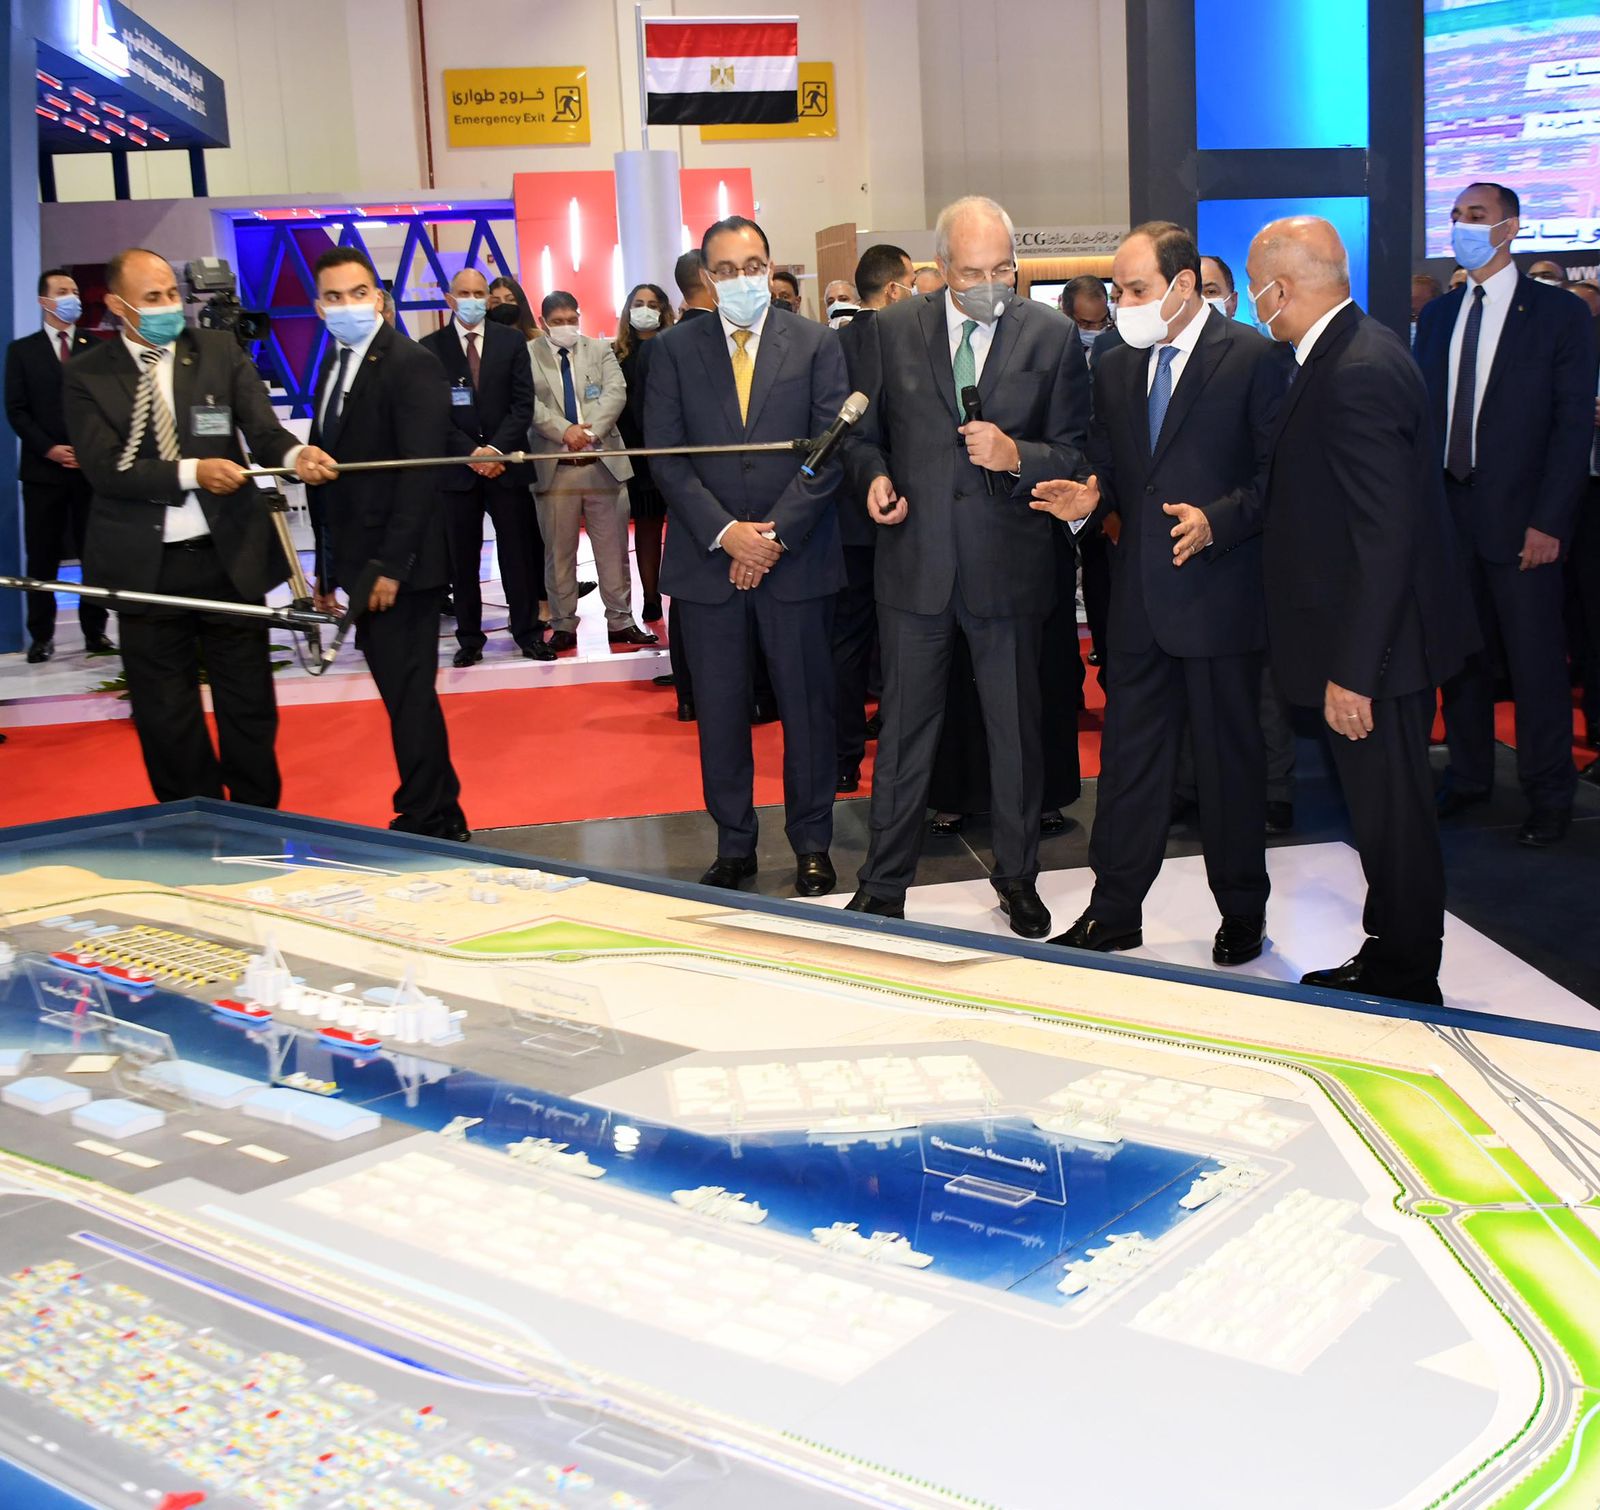  افتتاح الرئيس السيسي معرض ومؤتمر النقل الذكي واللوجيستيات